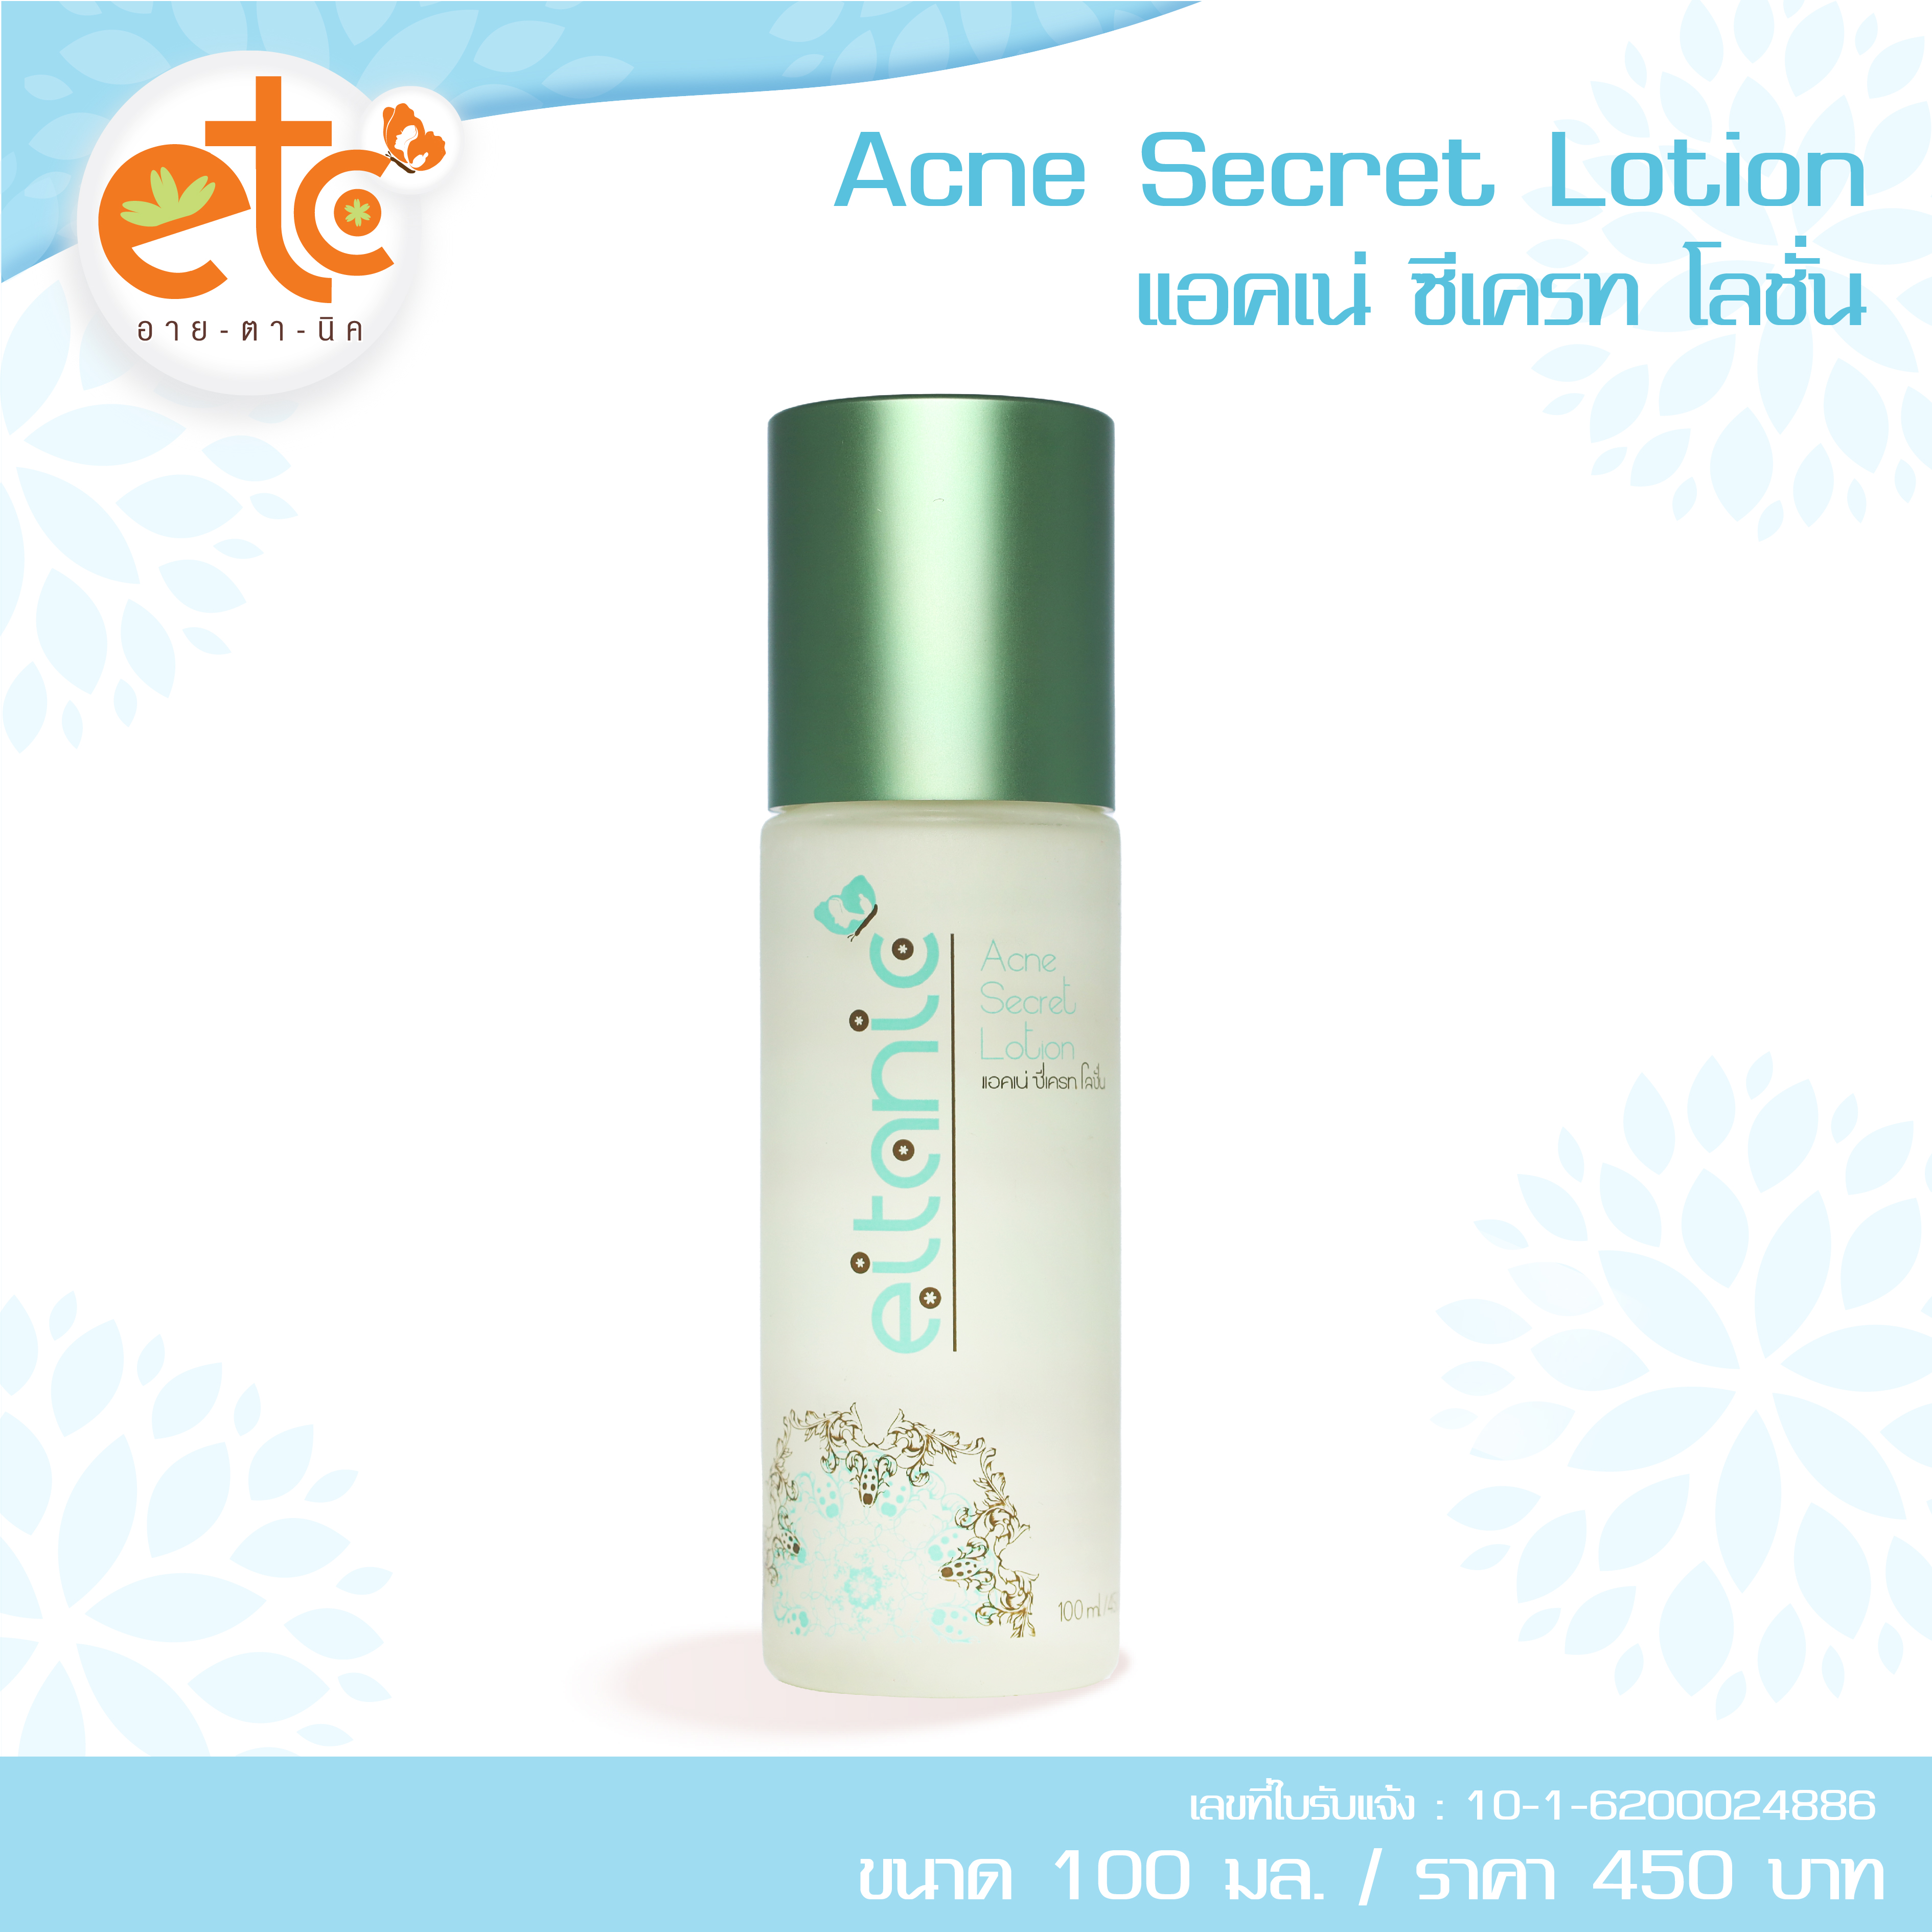 Acne Secret Lotion